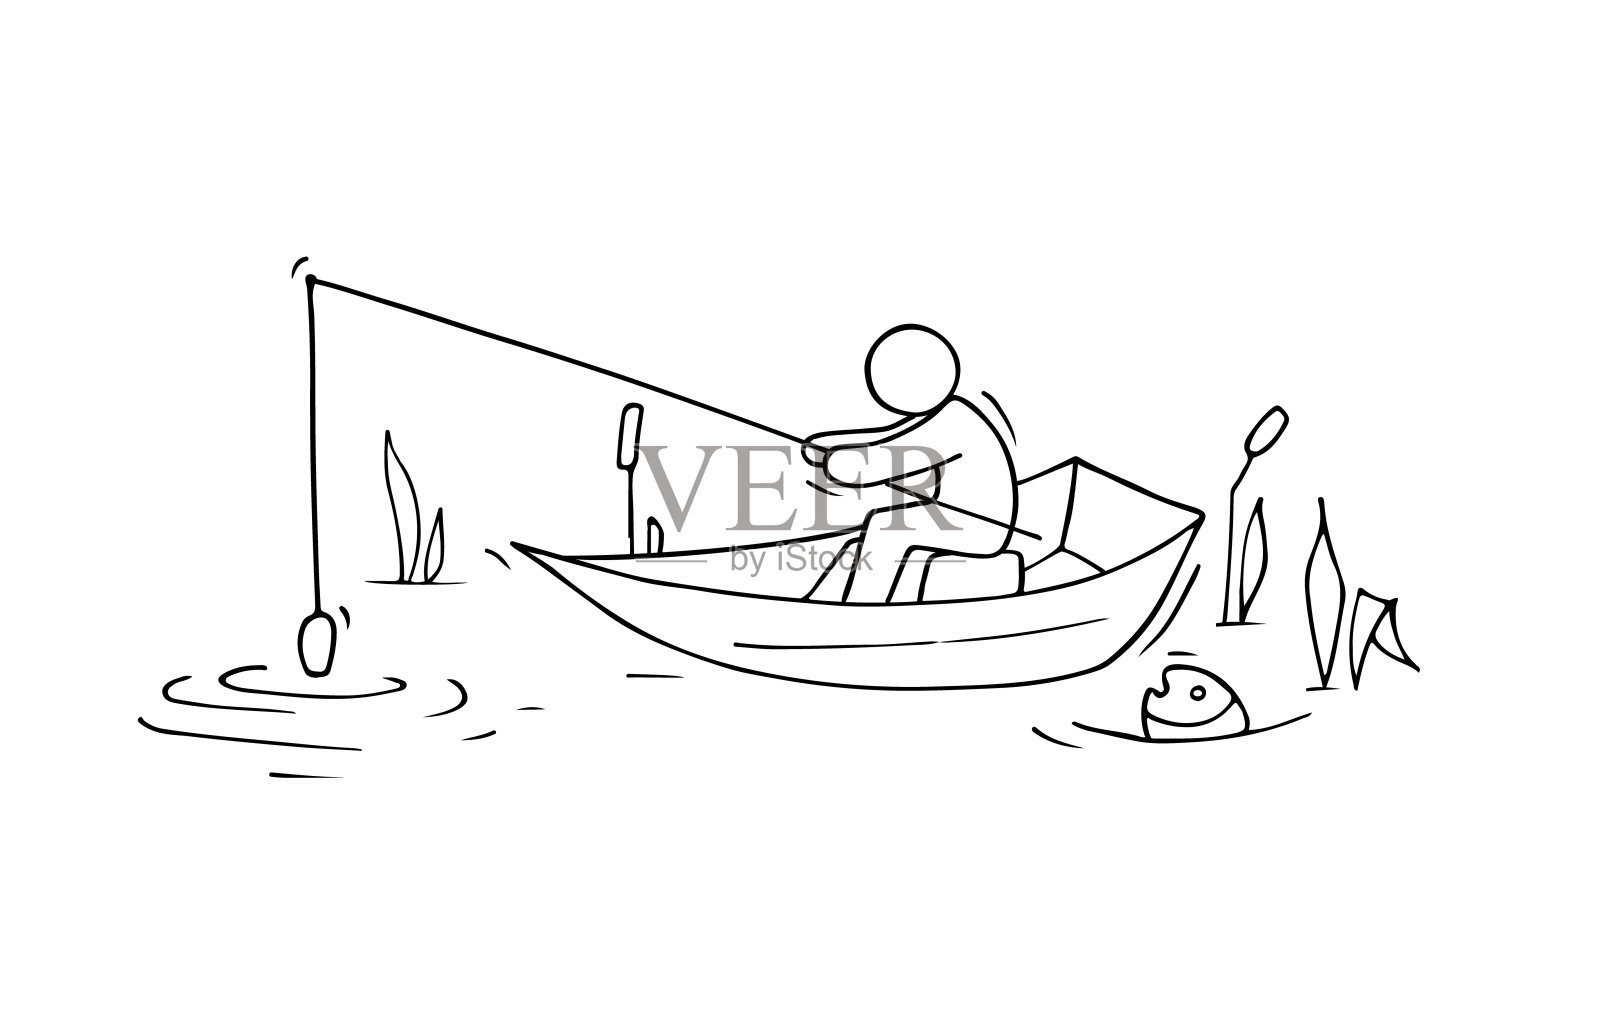 坐在船上钓鱼的人插图(渔夫、钓鱼、湖面、船、人物)扁平化插图_北极熊素材库